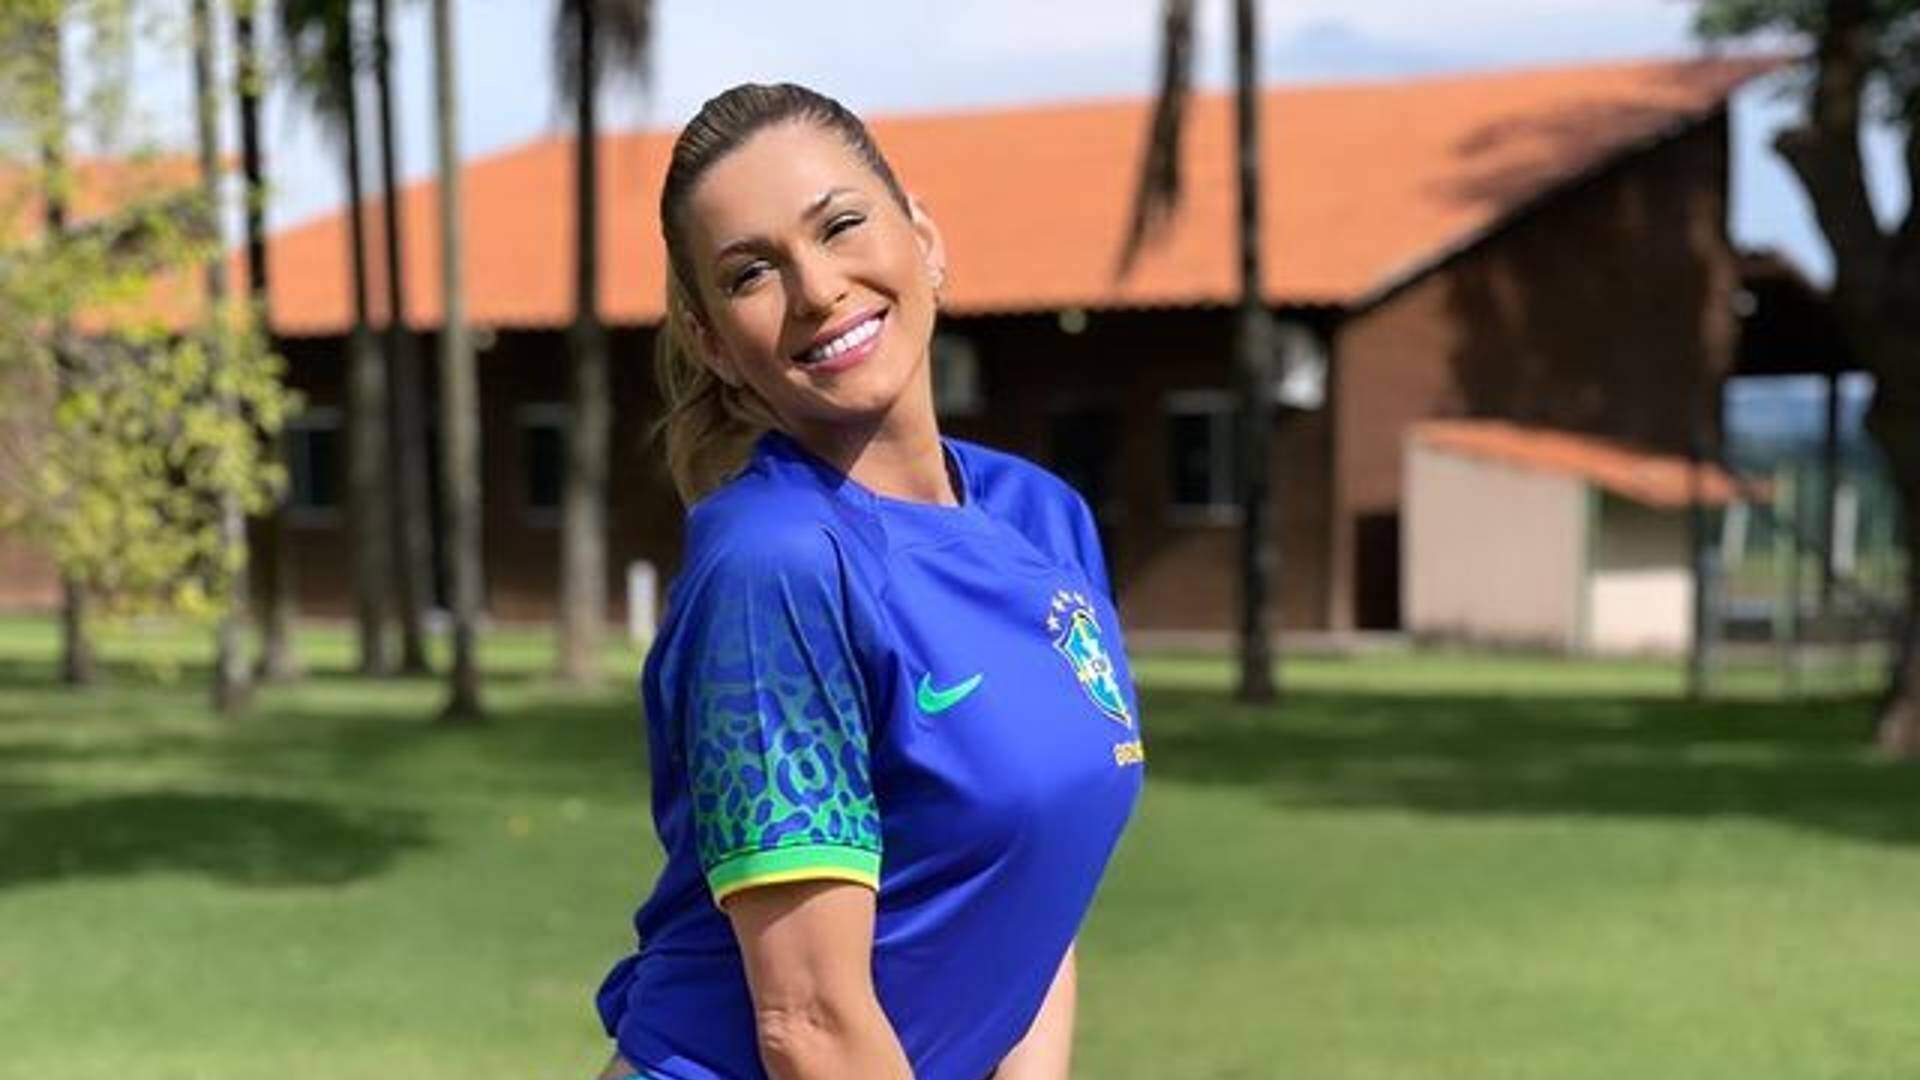 Bumbum de Lívia Andrade quase ‘rasga’ uniforme do Brasil com empinada: “Linda com esse rabetão”